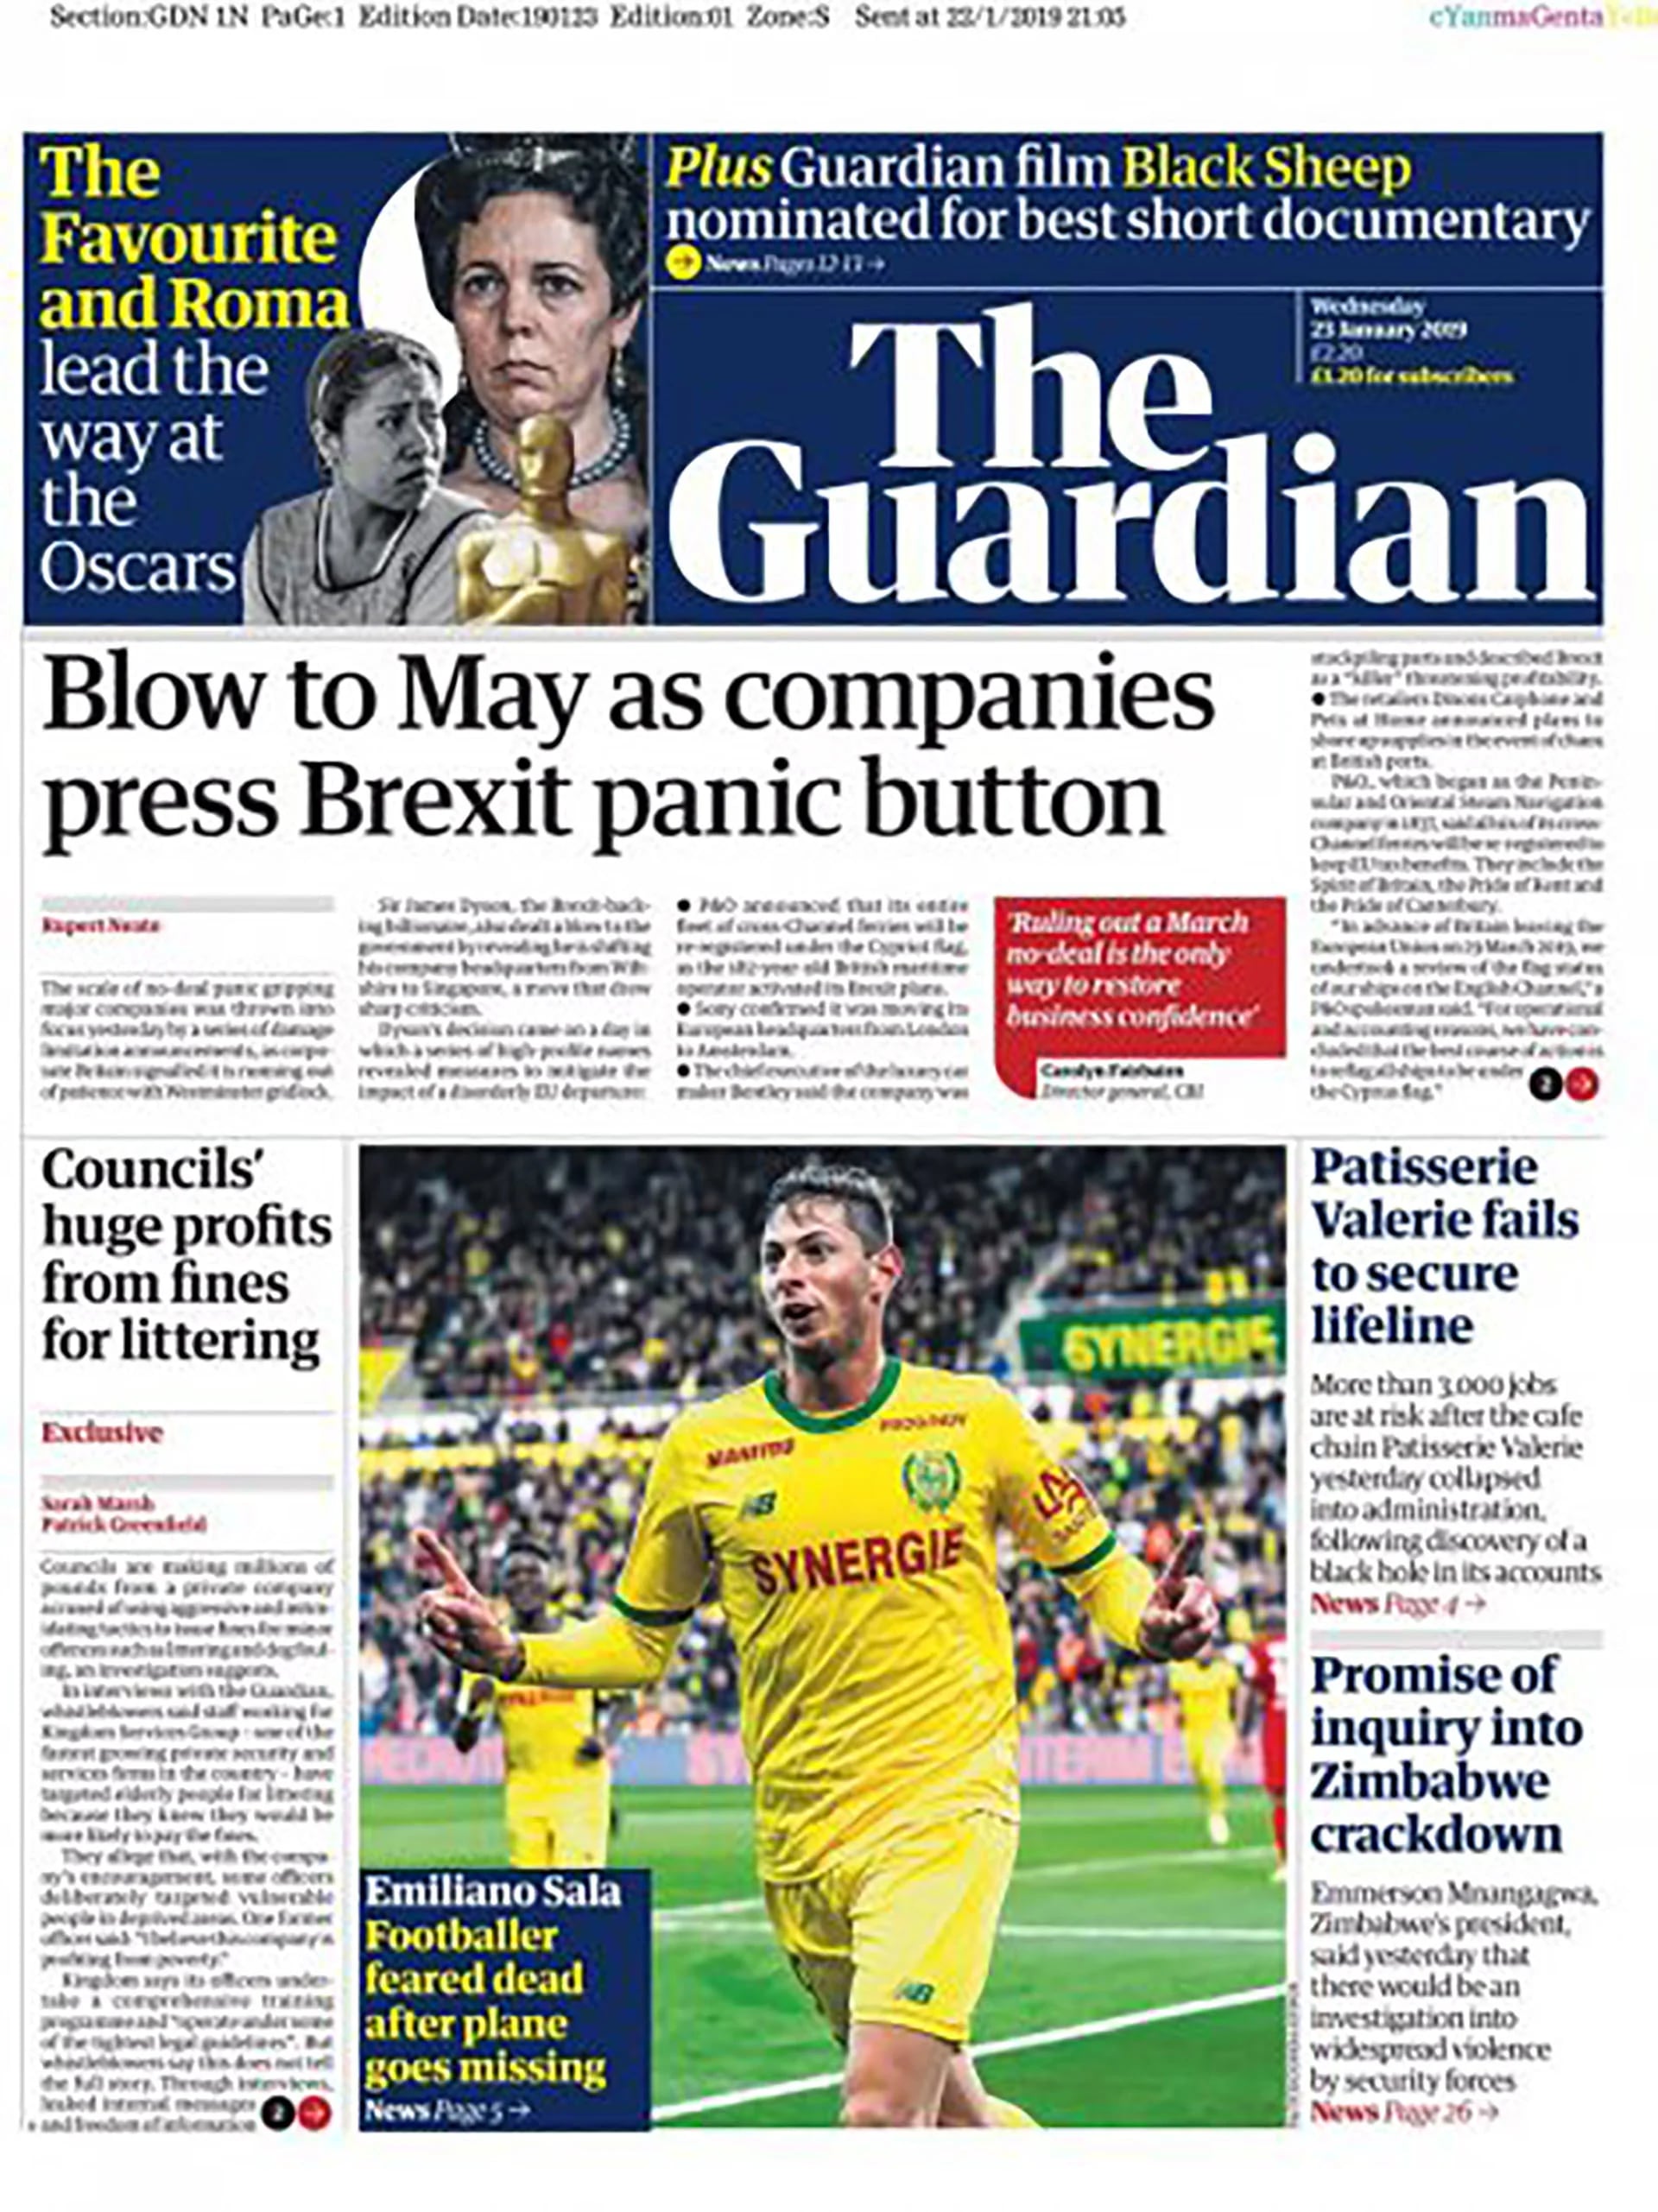 The Guardian destacó en su portada el temor por la muerte del futbolista Emiliano Sala tras la desaparición de su avión